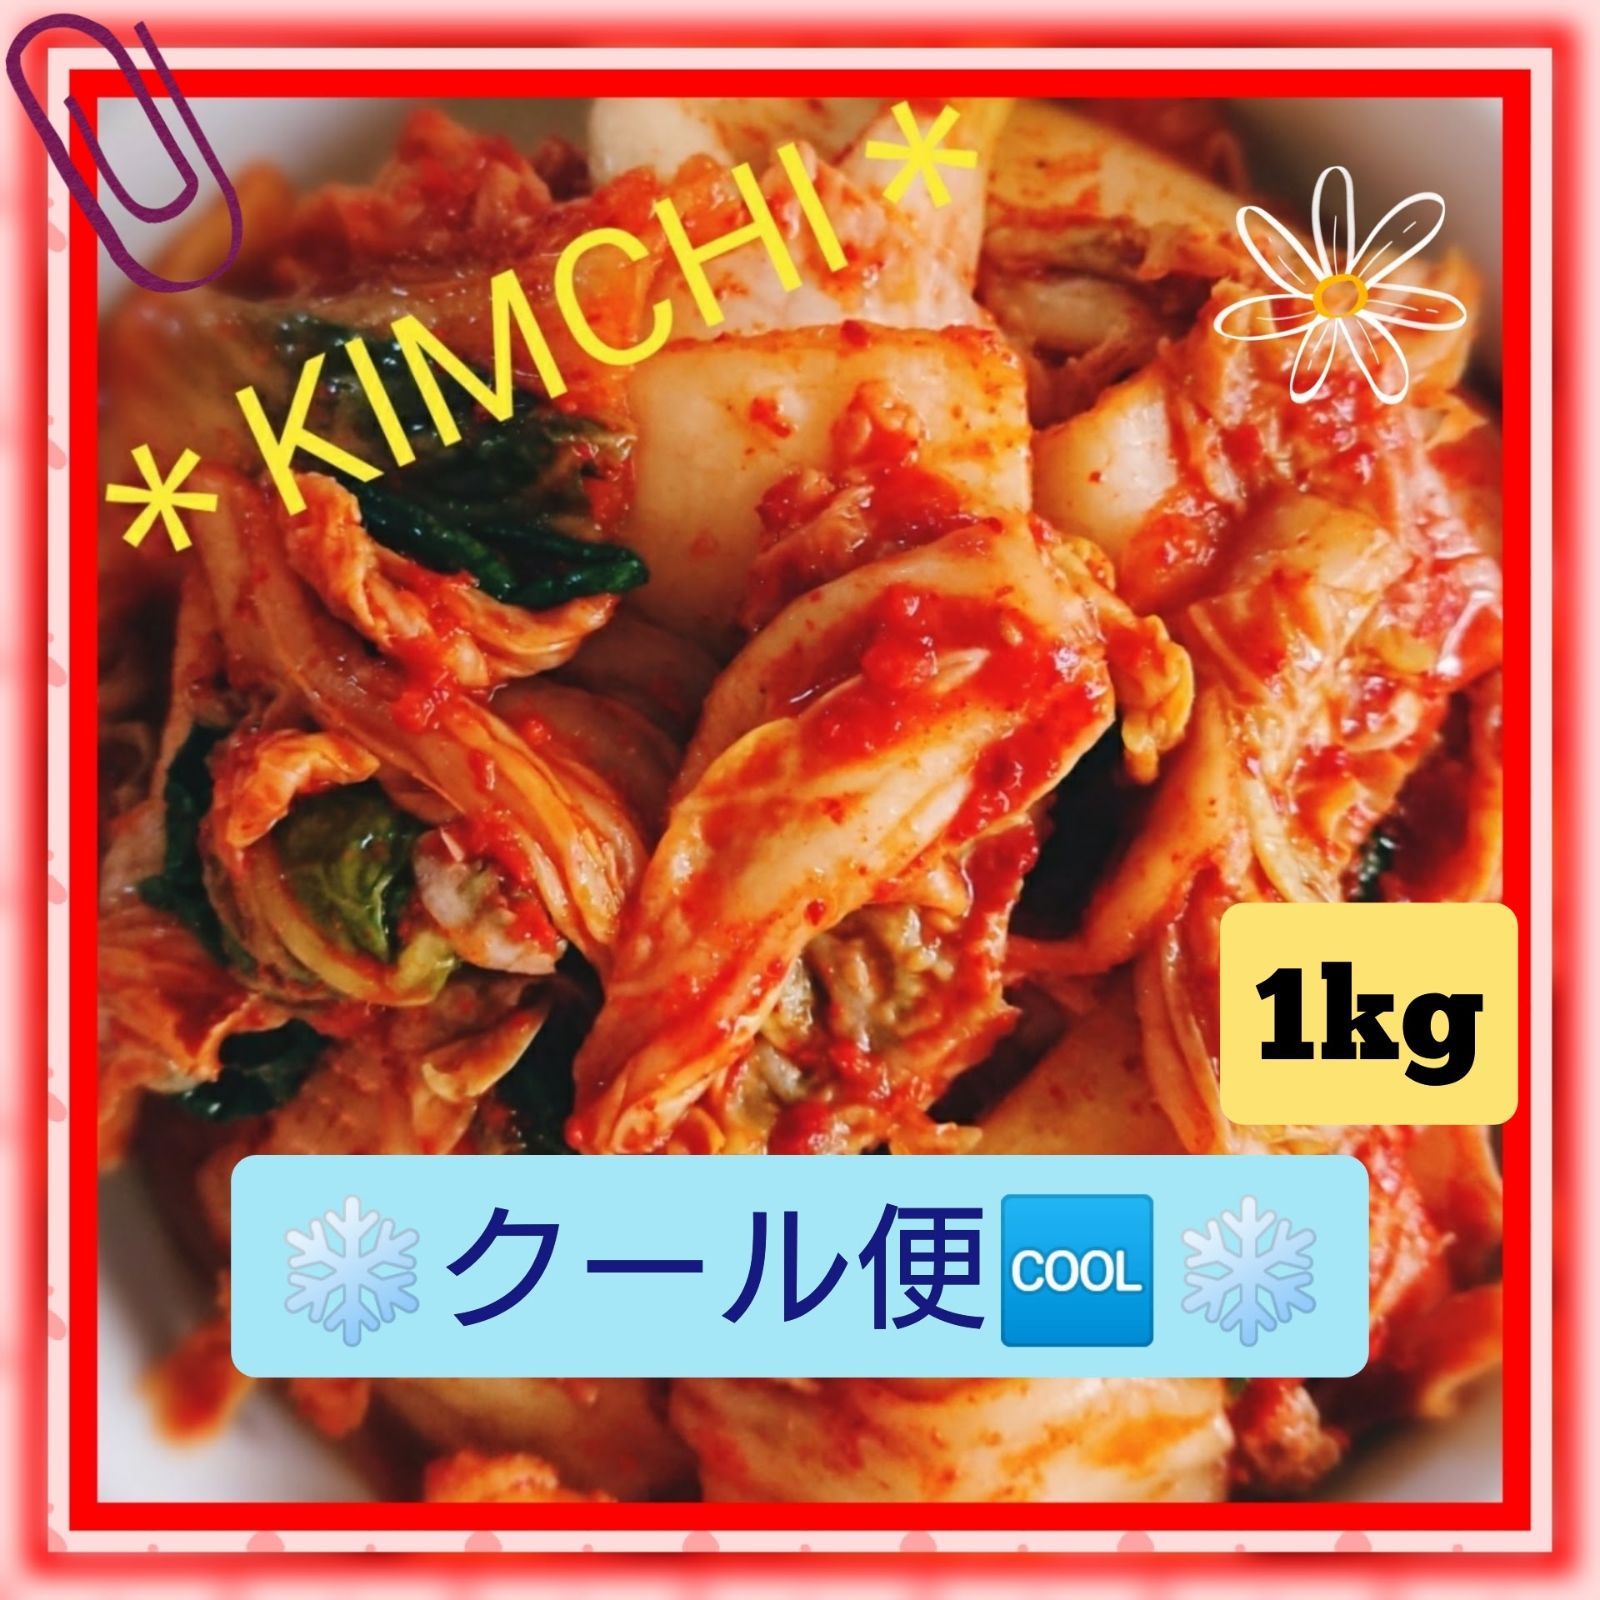 チャーミー様専用ページ く-る便 白菜キムチ1kg - ウリジップキムチ(宇